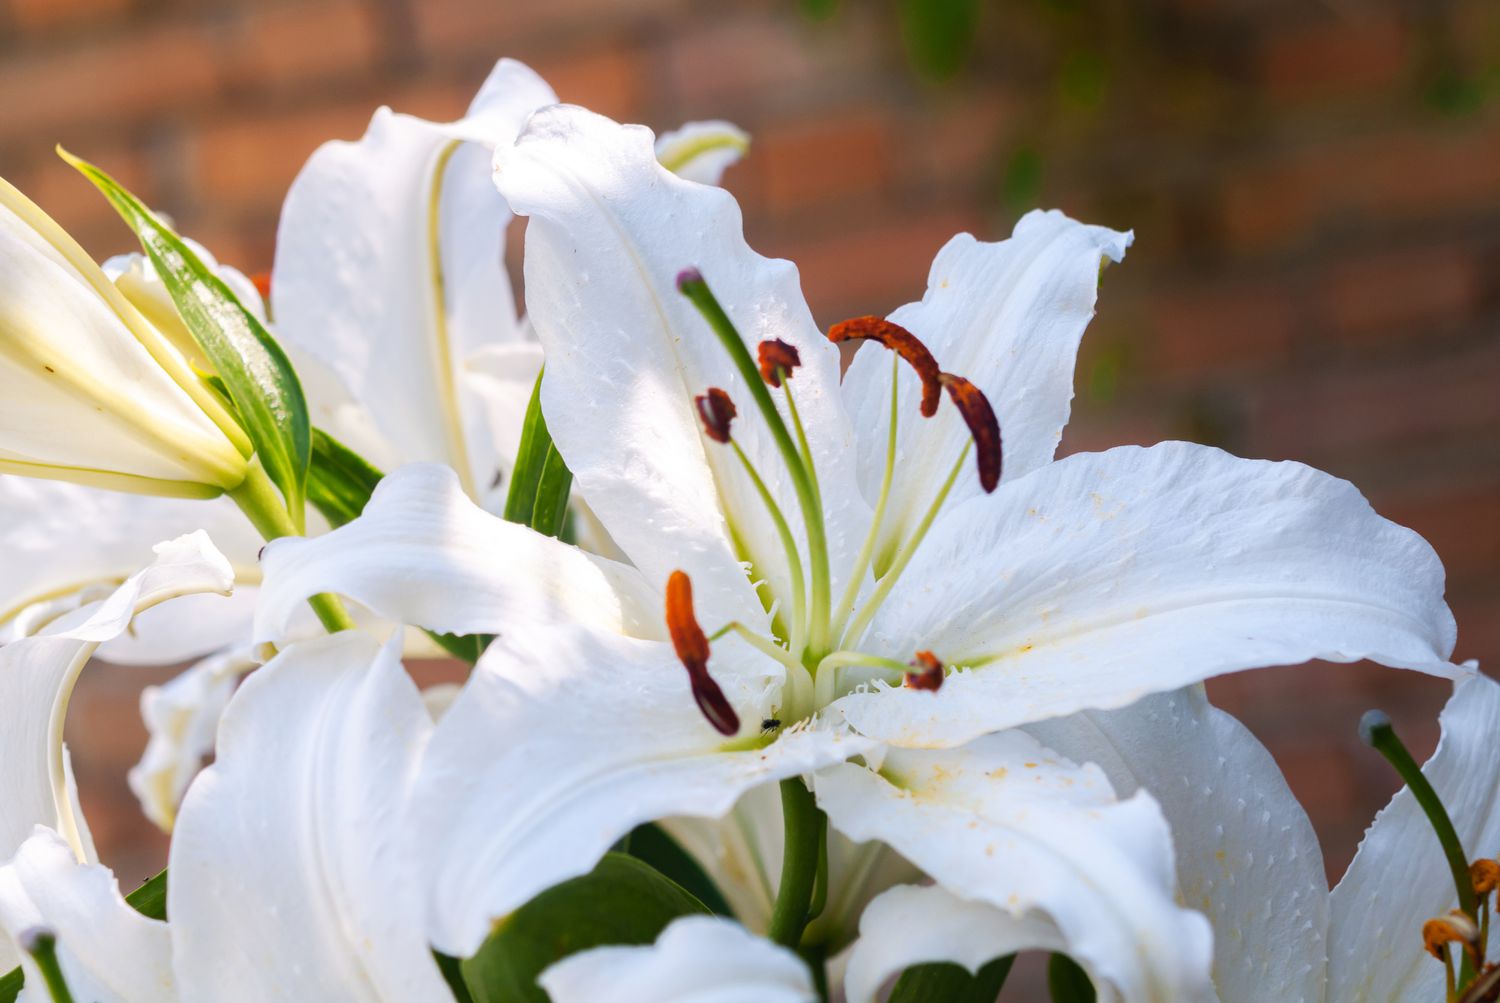 Casa-Blanca-Lilie mit großen weißen Blütenblättern und großen Staubgefäßen in Nahaufnahme